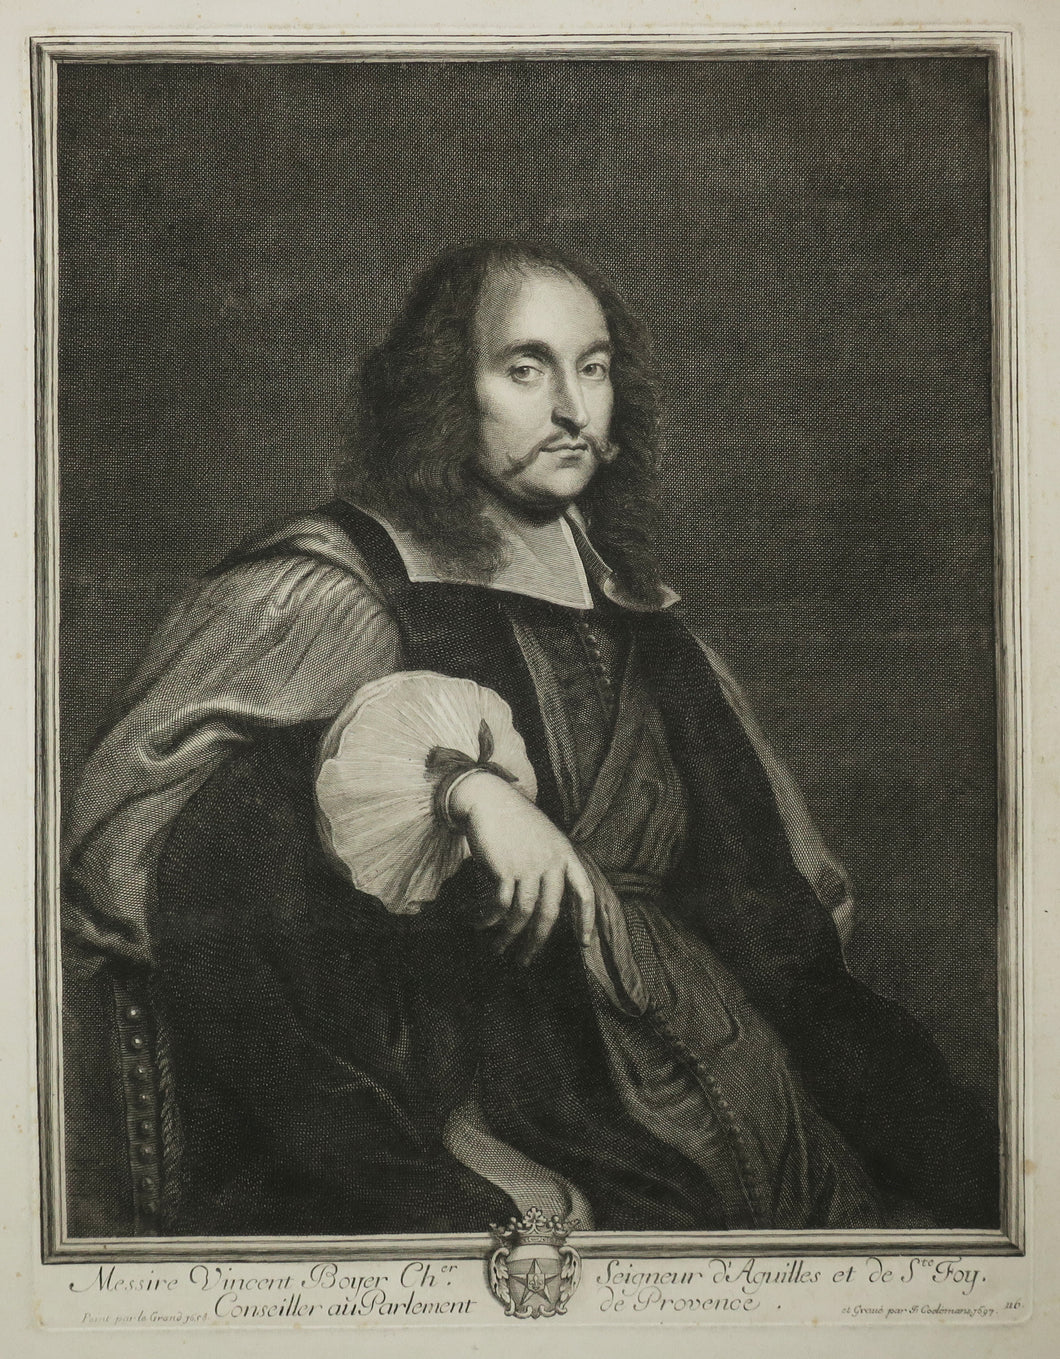 Portrait de Messire Vincent Boyer, Ch.er Seigneur d'Aguilles et de Ste Foy, Conseiller au Parlement de Provence.  1697.